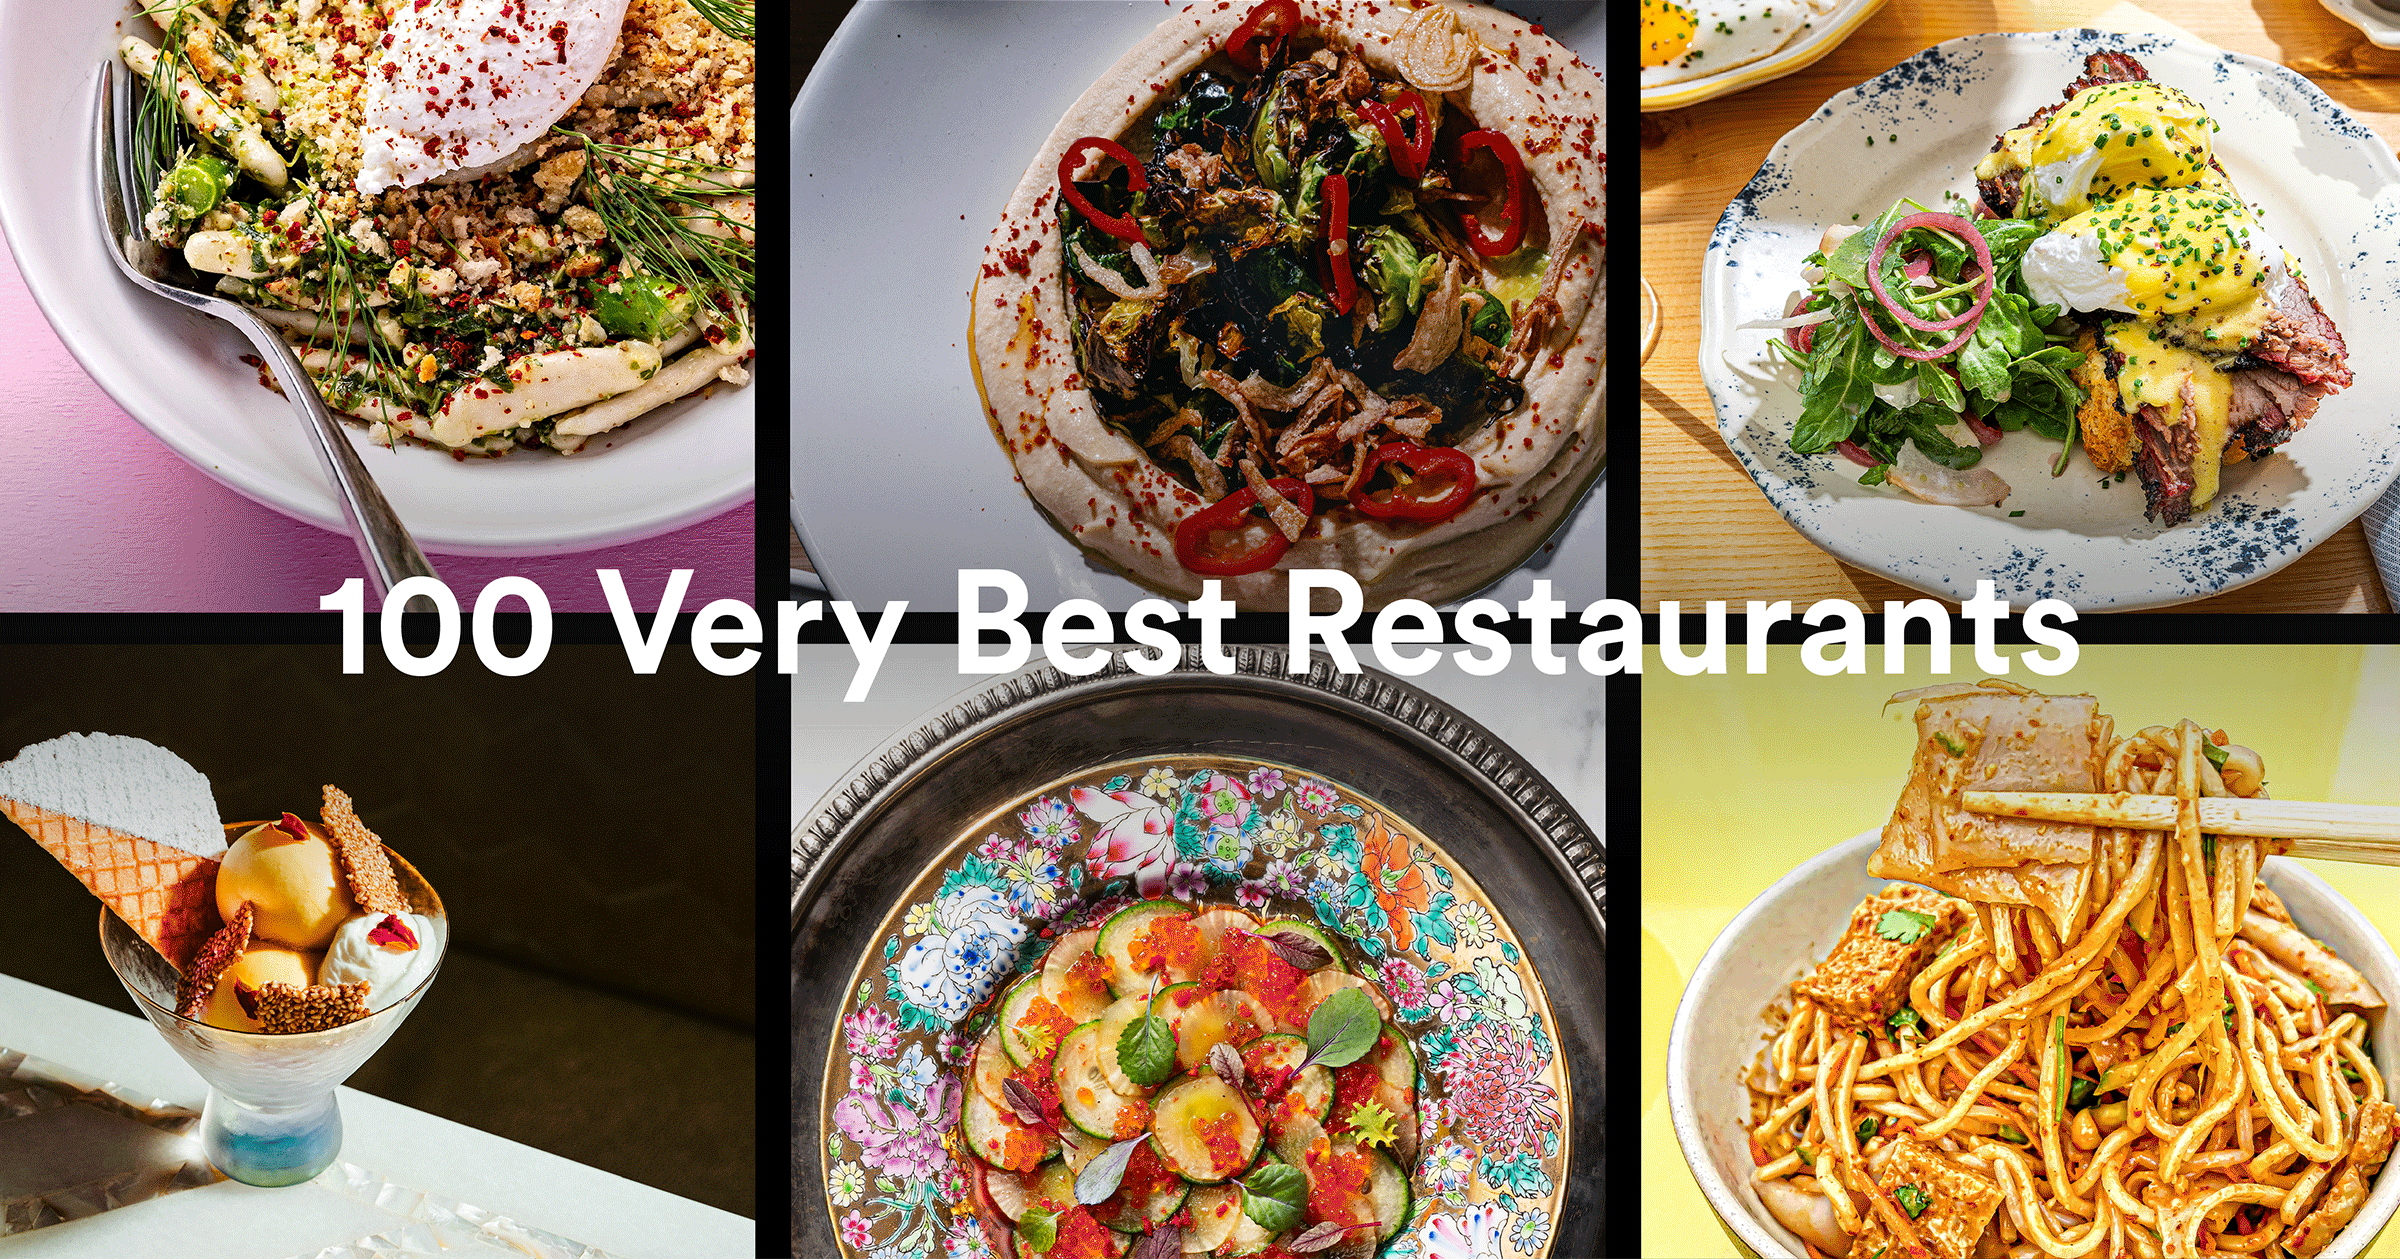 The 100 Very Best Restaurants in Washington, DC